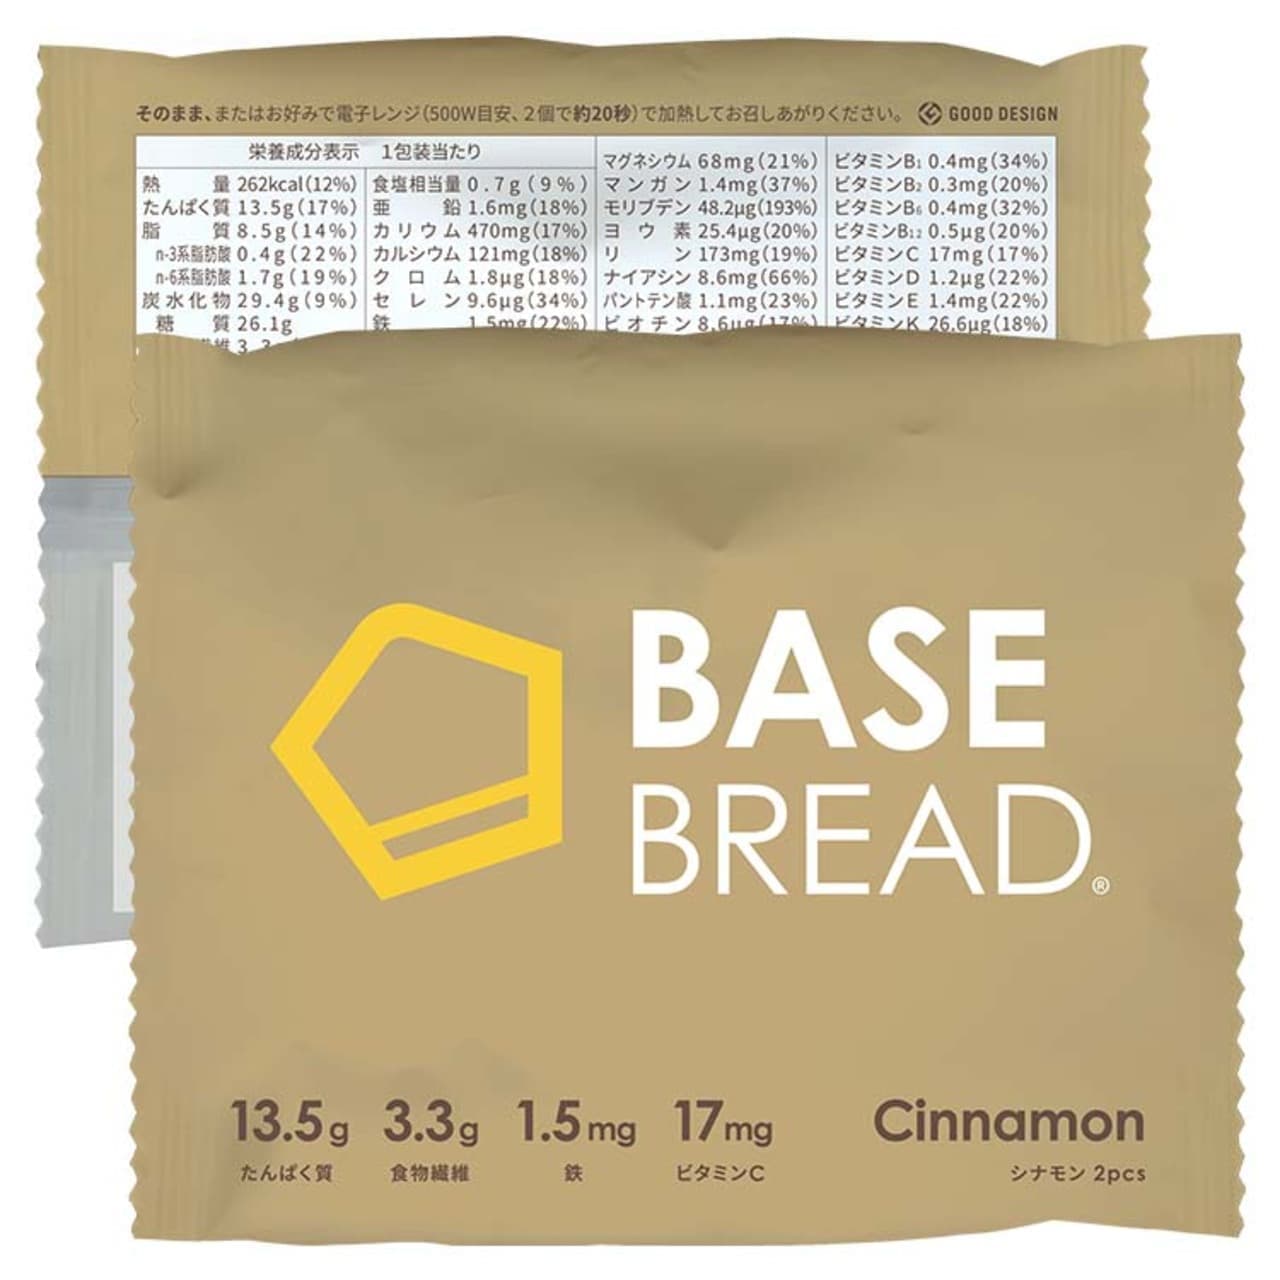 BASE Food "BASE BREAD Cinnamon" package